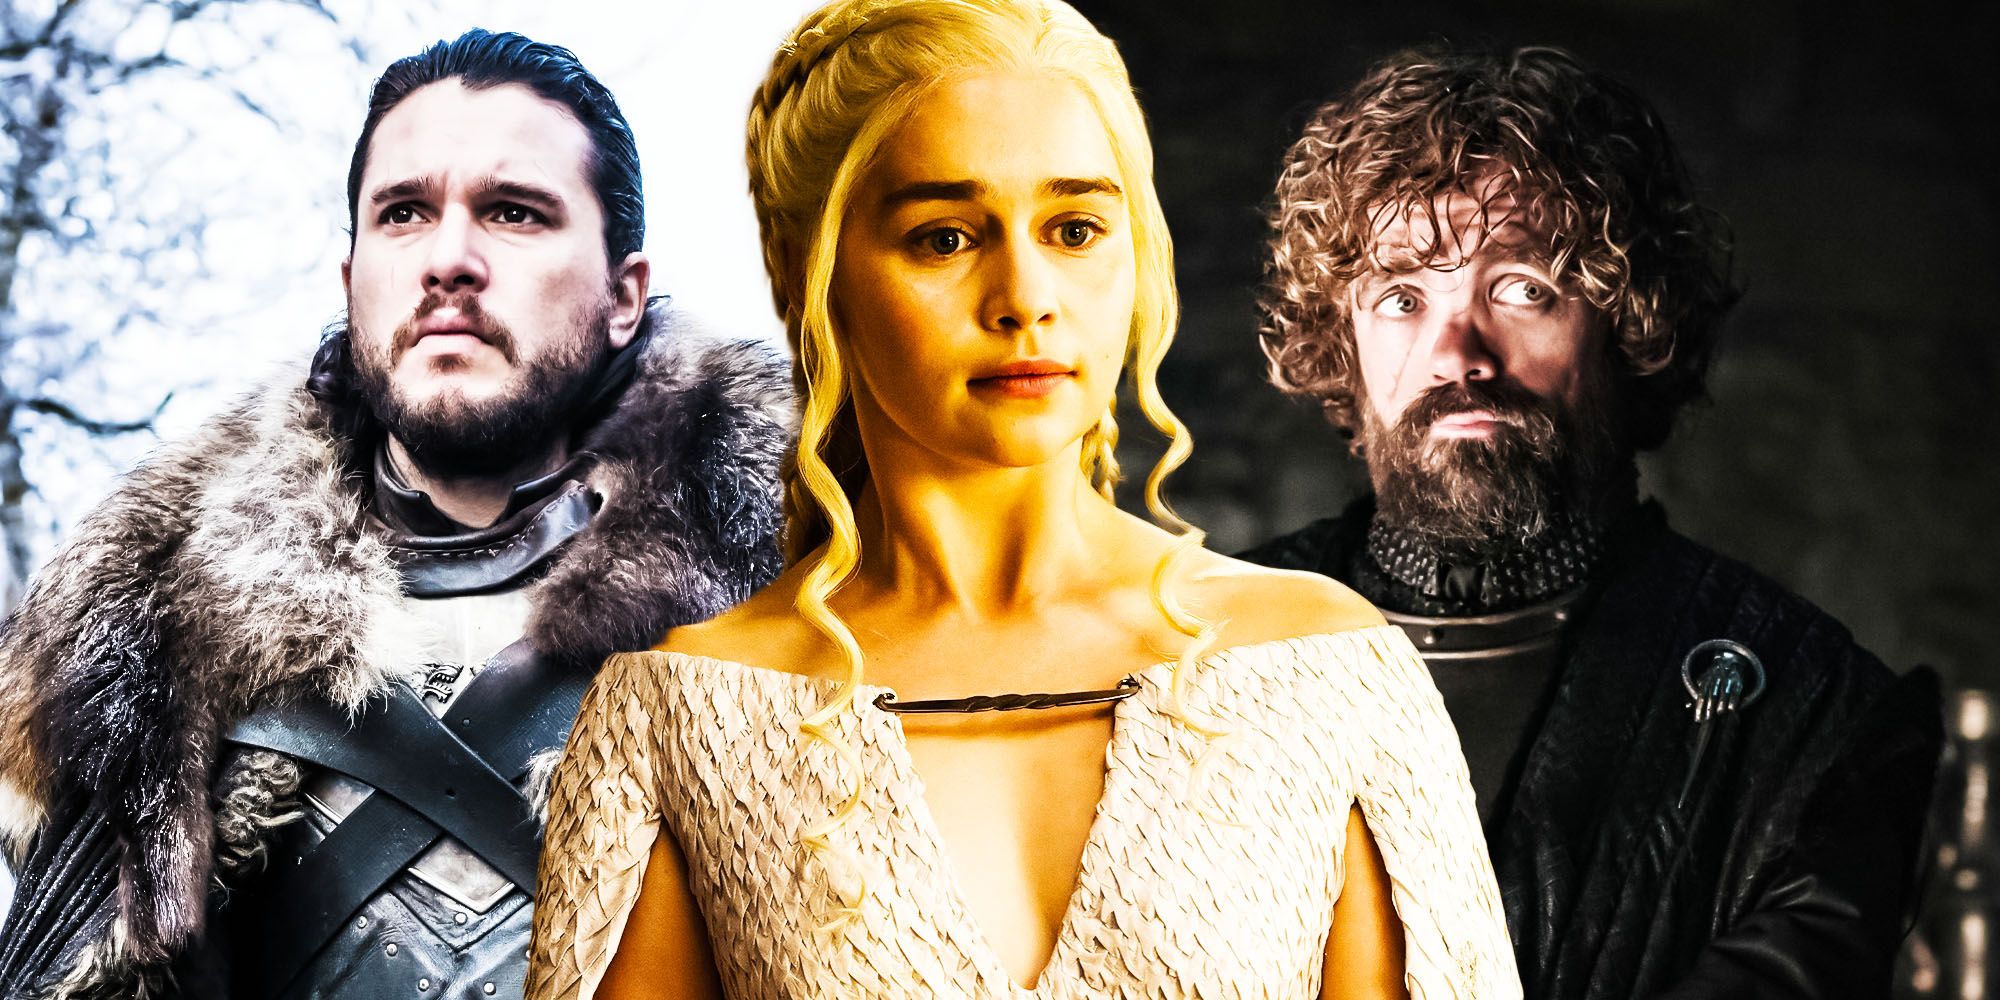 Kit Harington's Jon Snow, Emilia Clarke's Daenerys Targaryen, and Peter Dinklage's Tyrion Lannister in Game of Thrones.